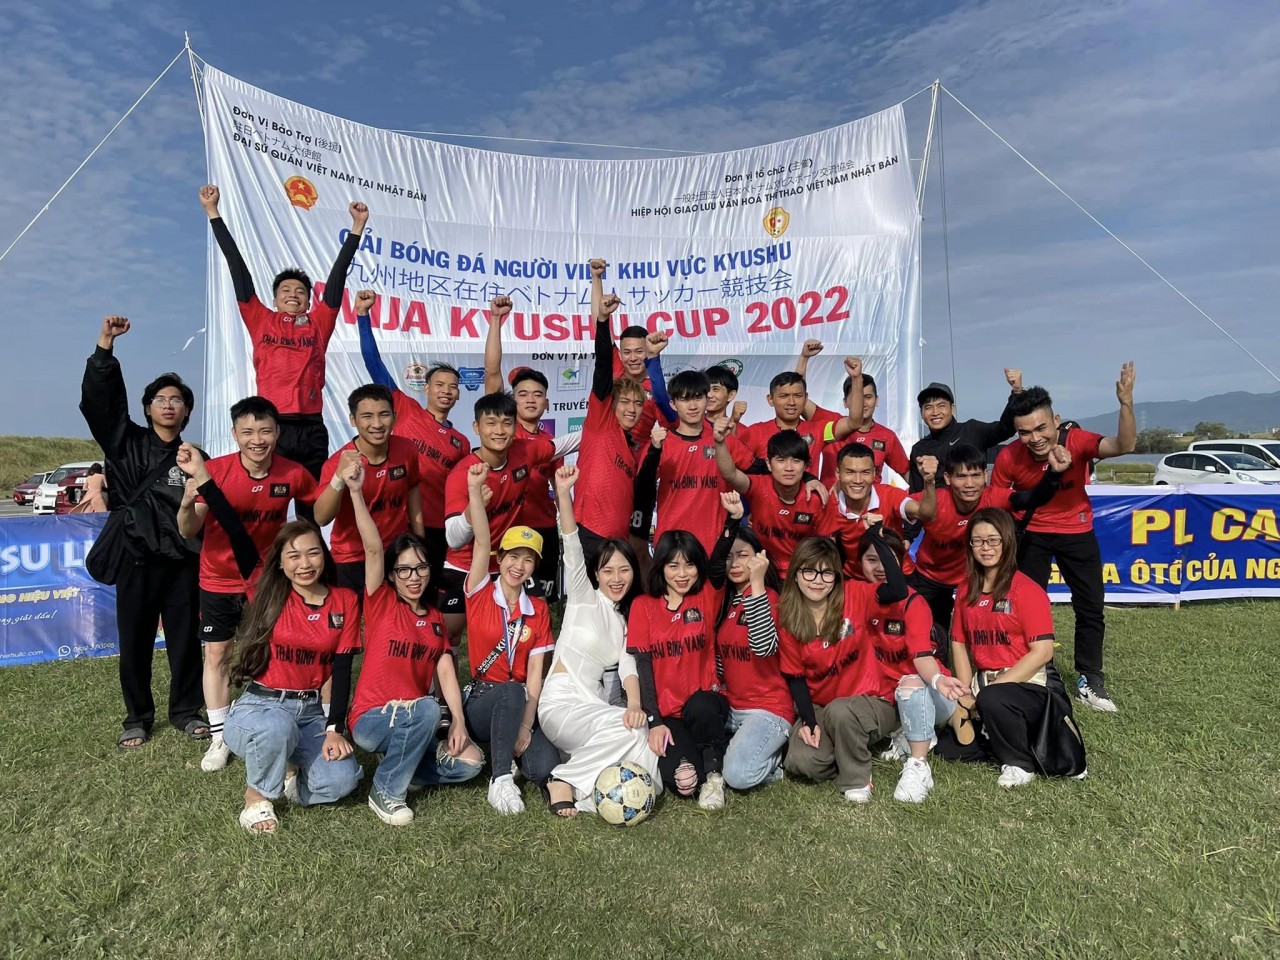 16 đội tham gia giải bóng đá của cộng đồng người Việt khu vực Kyushu - Nhật Bản